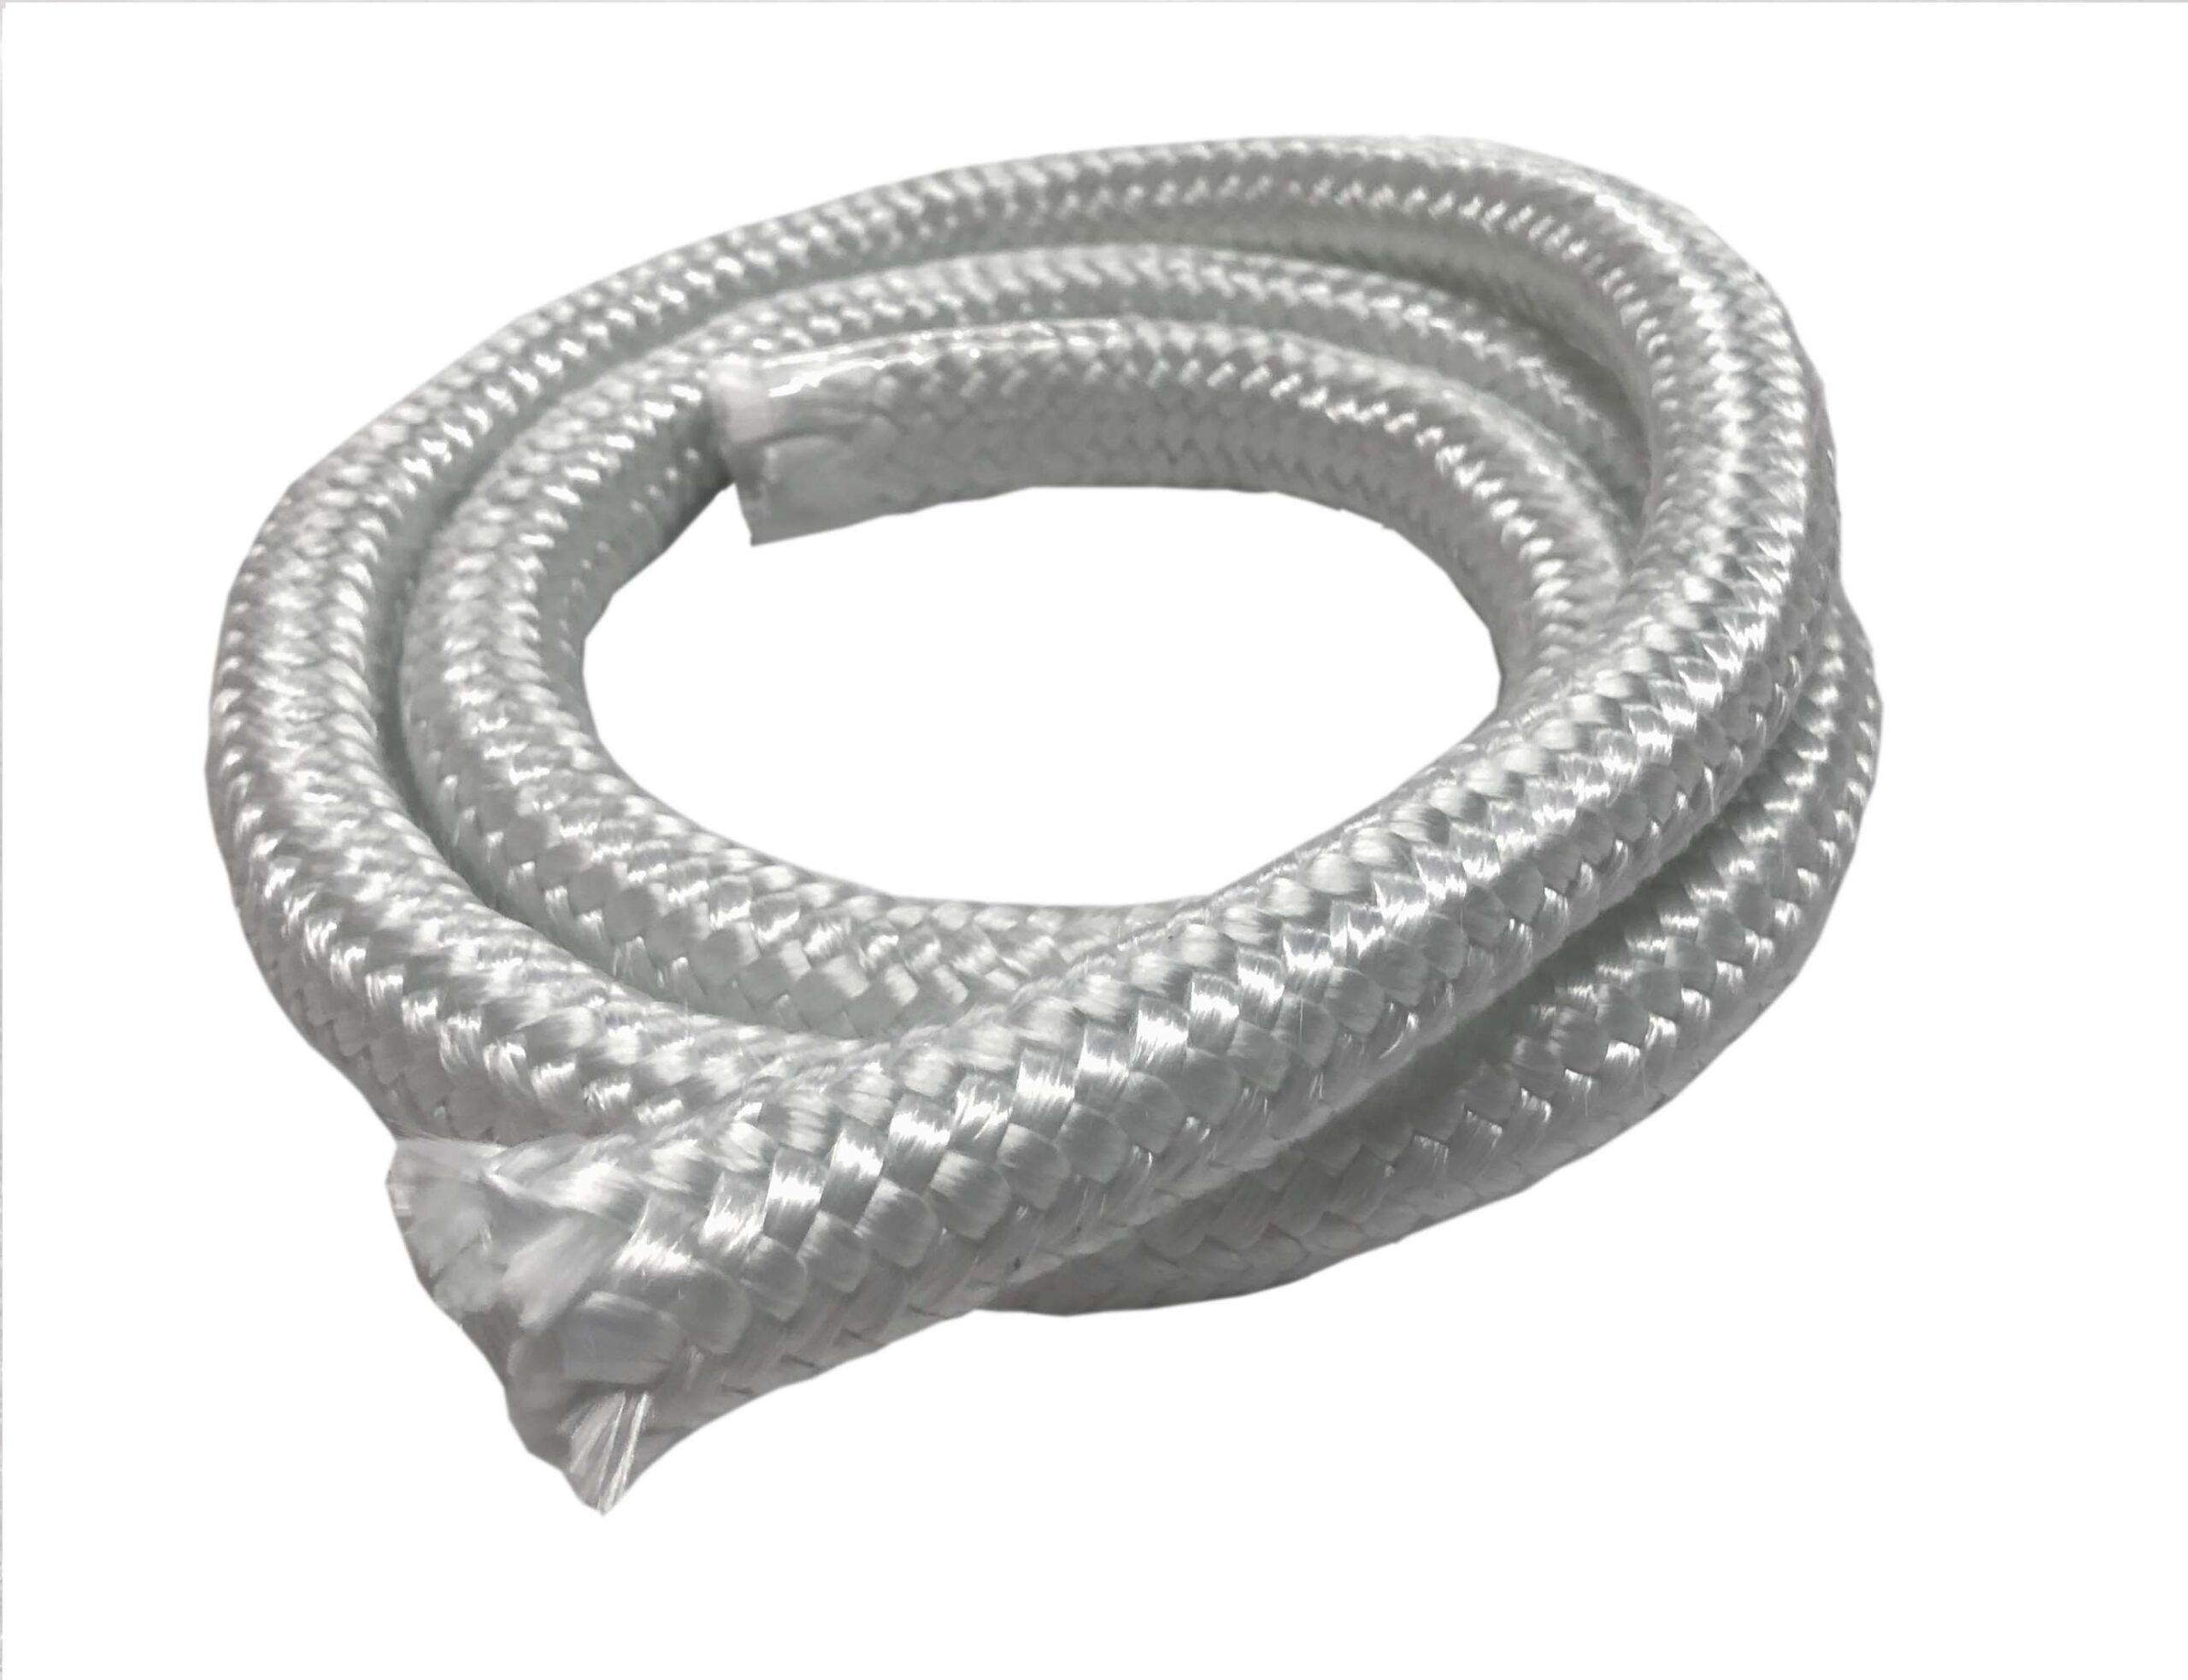 MinGlas 3350 Fiberglass Round Braided Rope, Firm Texture, round braided